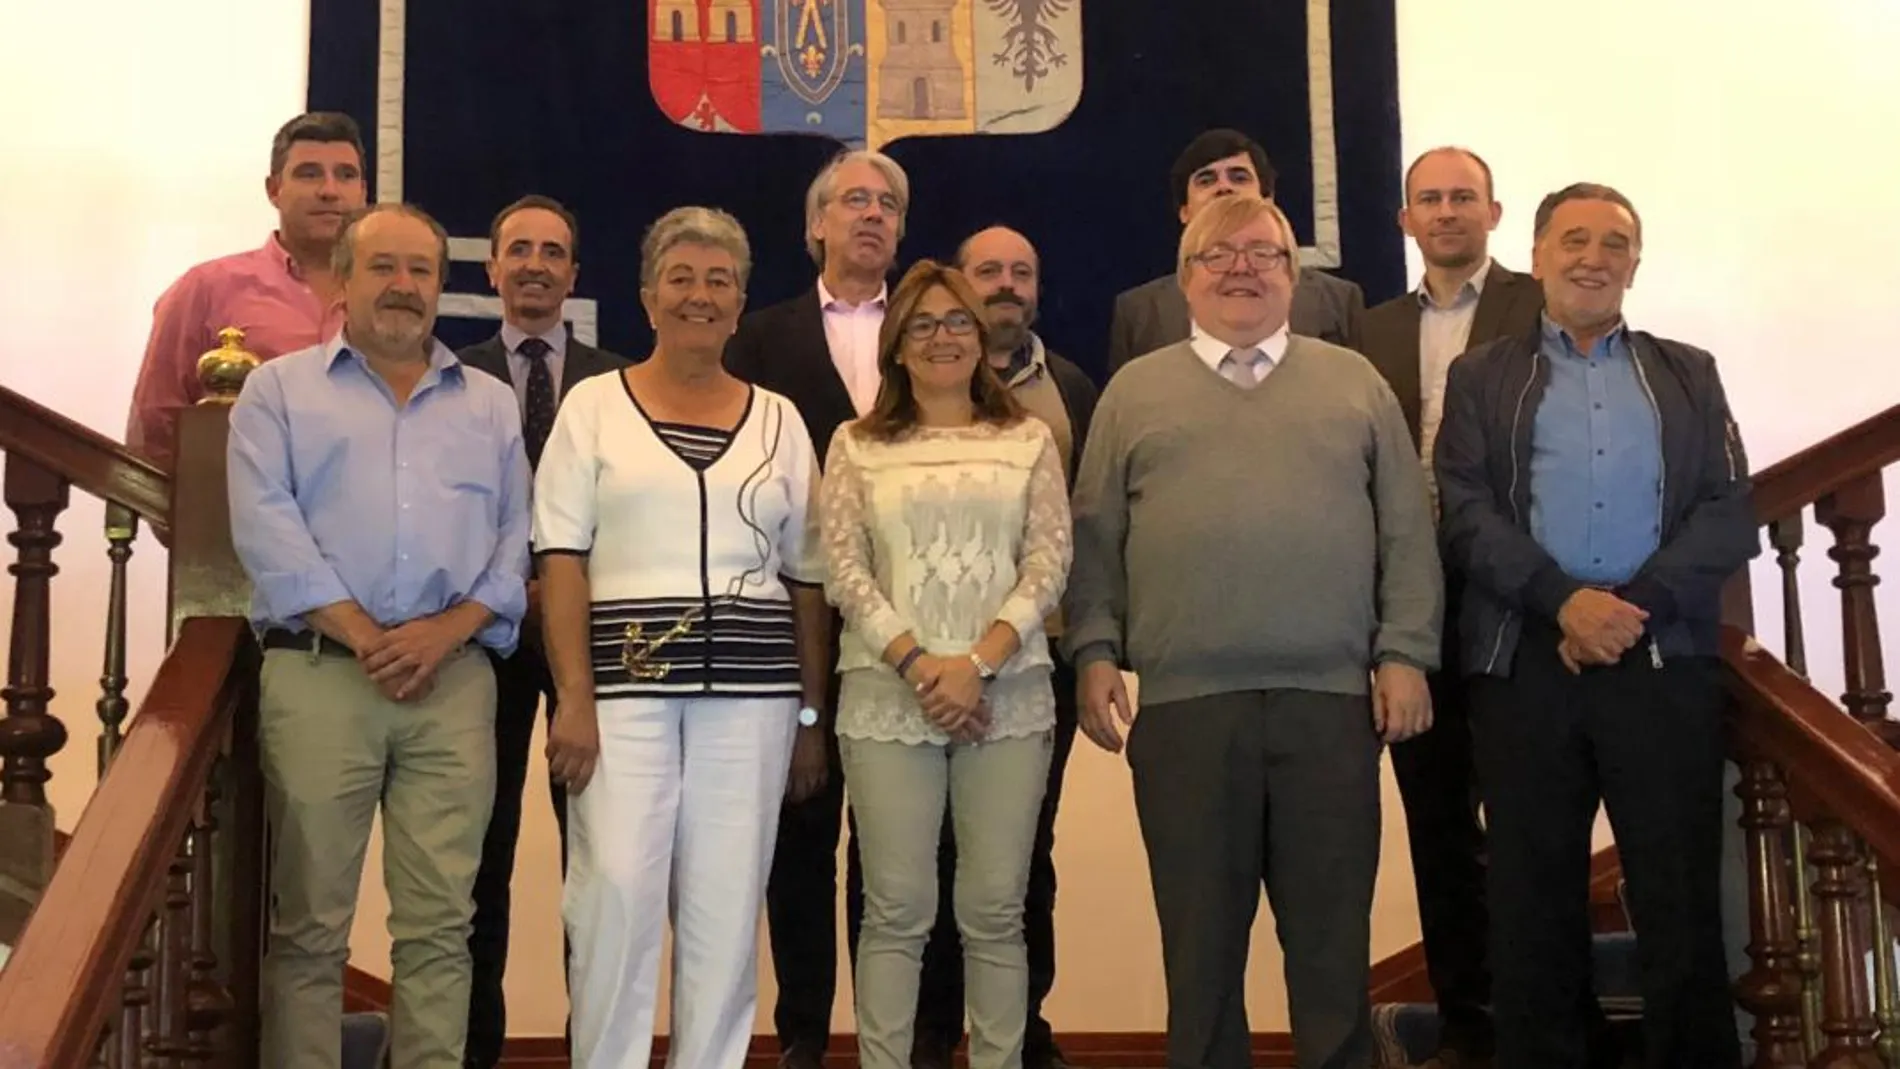 La presidenta de la Diputación de Zamora, Mayte Martín, junto a los responsables de la compañía belga Windvision, y alcaldes de la zona como el de Almeida de Sayago, Miguel Alejo